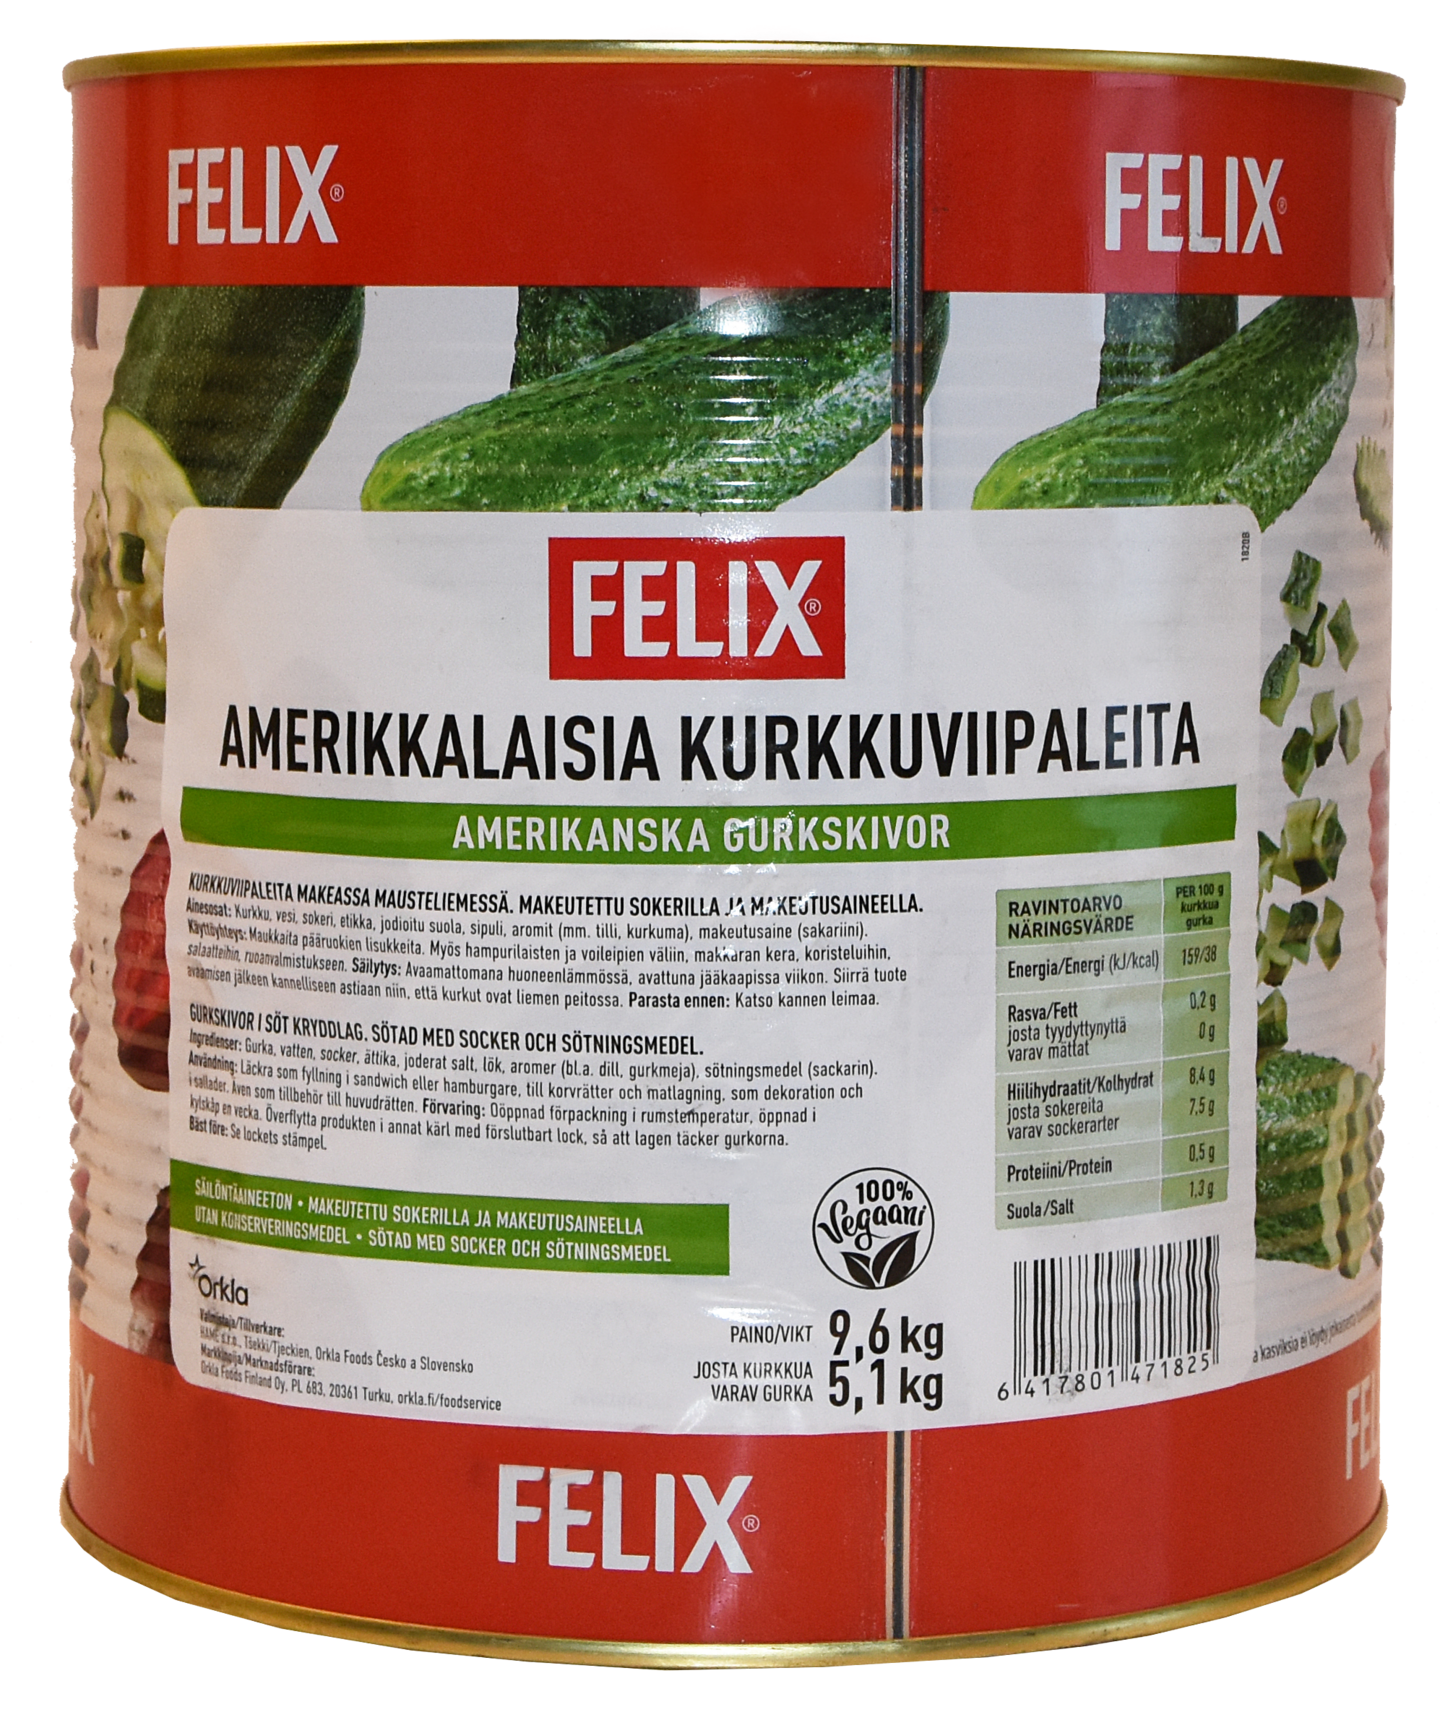 Felix amerikkalaisia kurkkuviipaleita 9,6kg/5,1kg